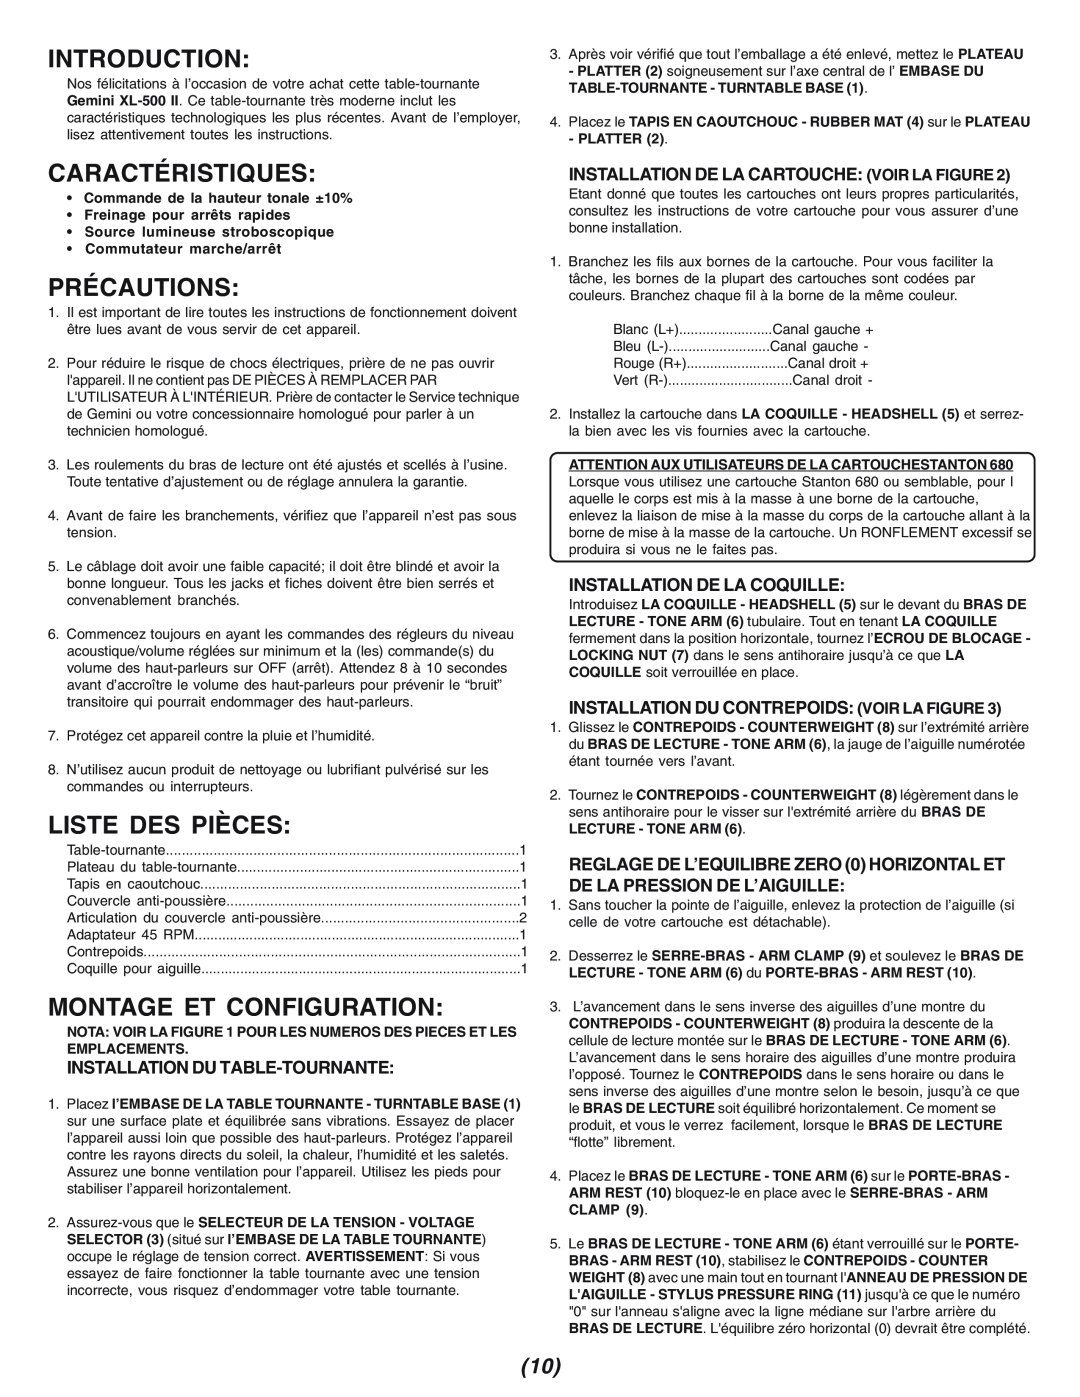 Gemini XL-500II Caractéristiques, Précautions, Liste Des Pièces, Montage Et Configuration, Installation Du Table-Tournante 